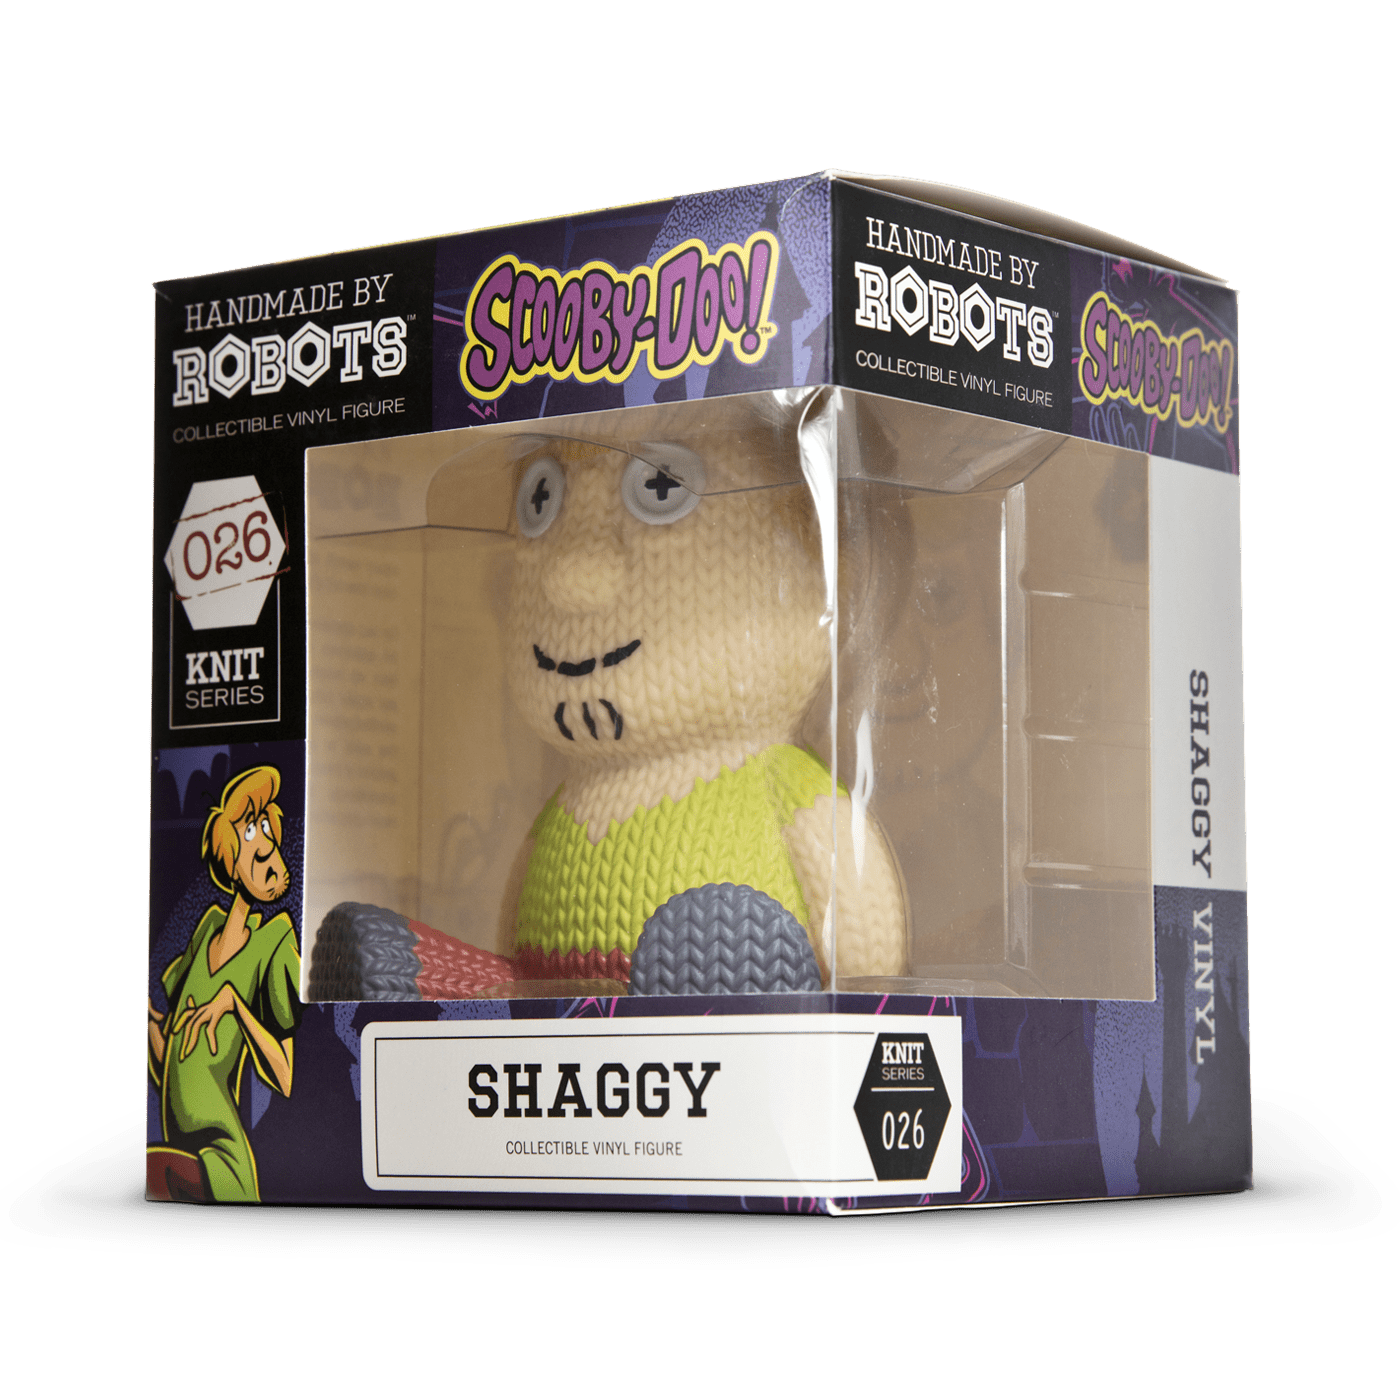 Shaggy #026 - Scooby-Doo - Handmade by Robots